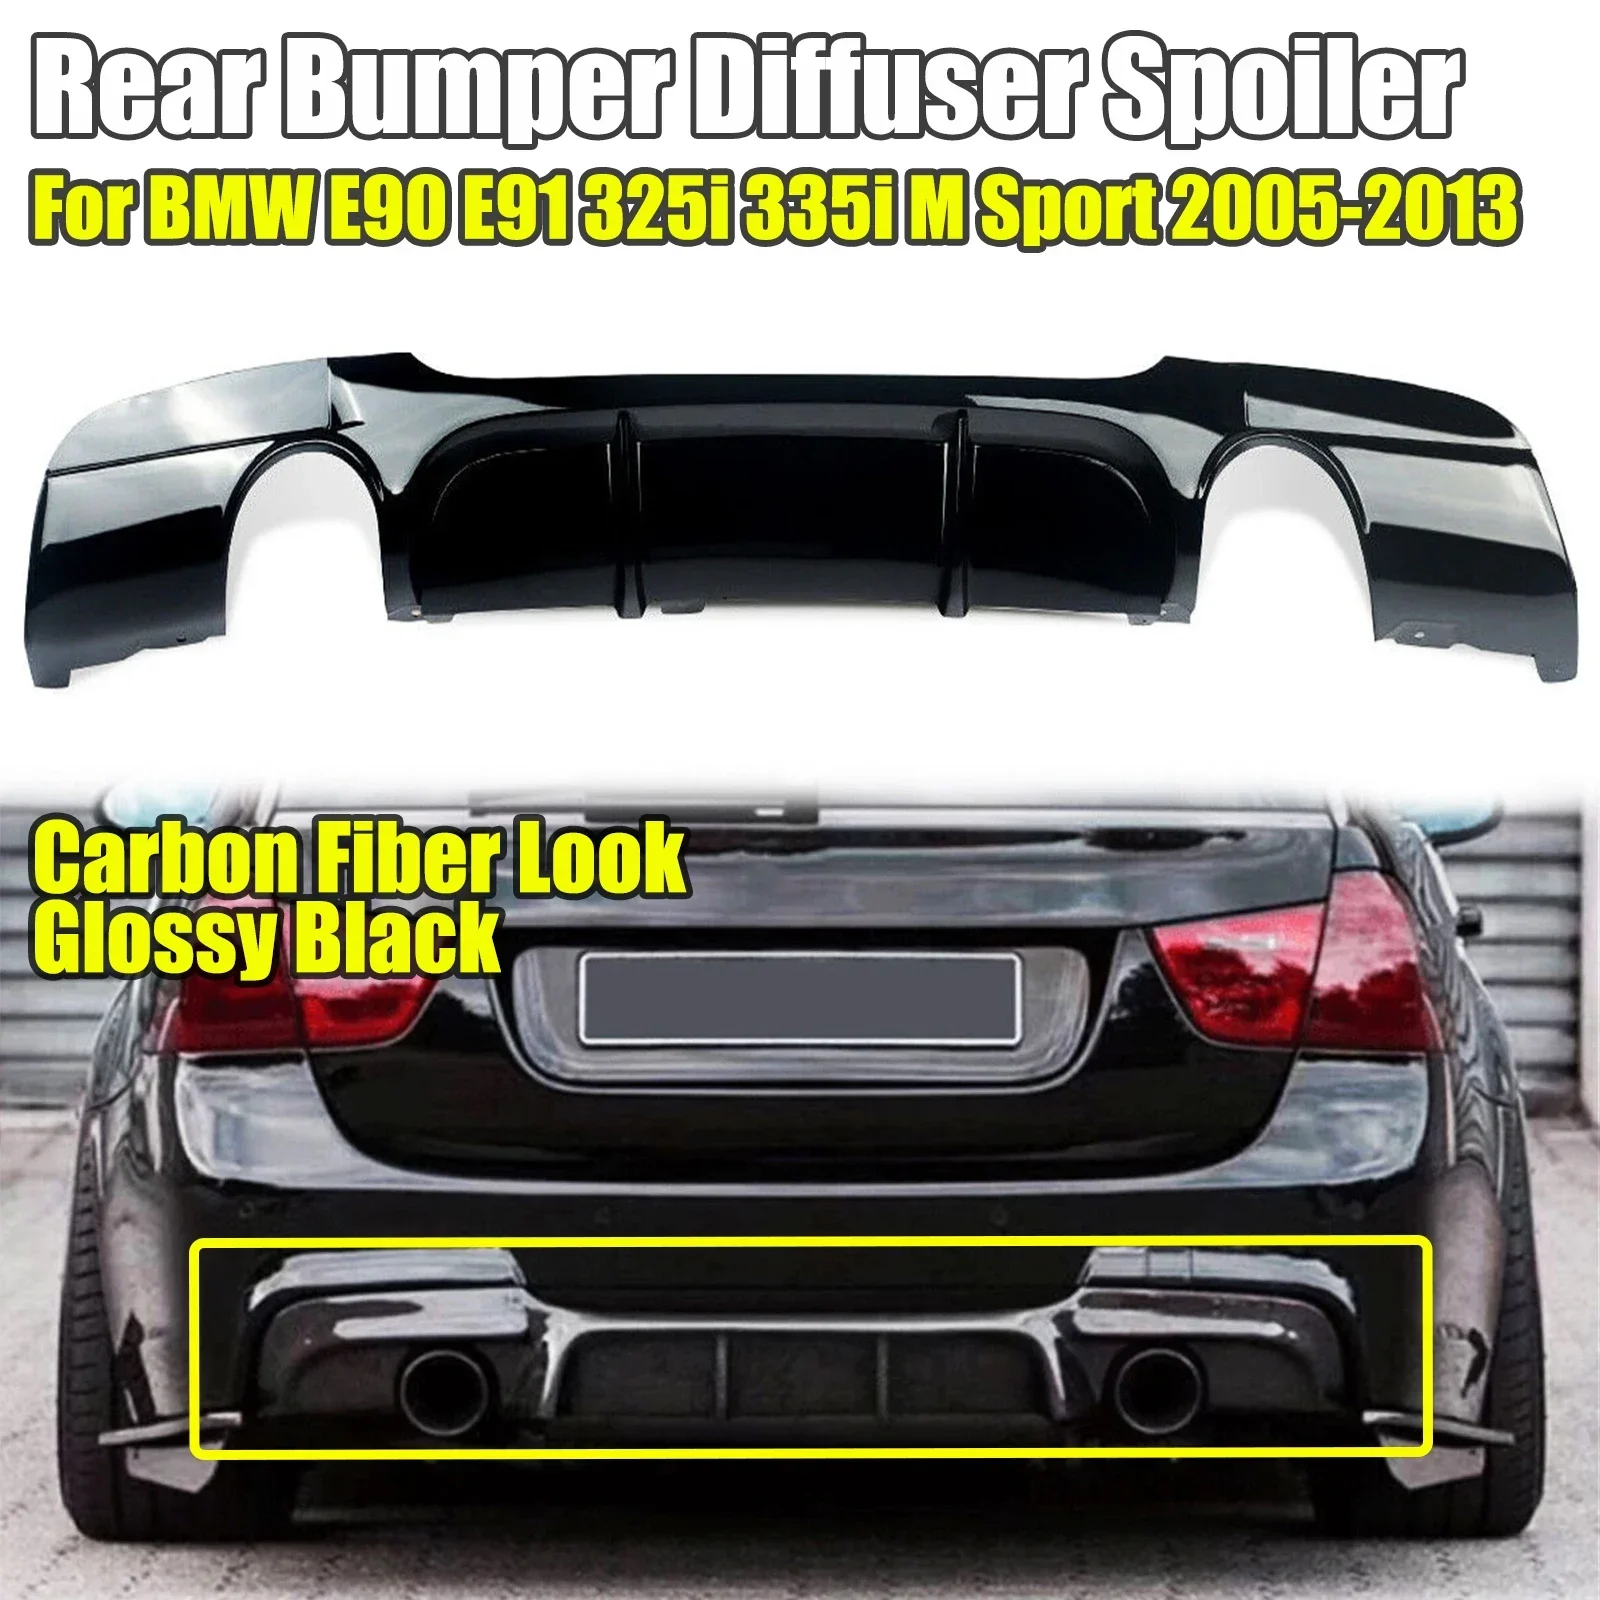 For 2005-2013 BMW 3 Series 325i 335i E90 E91 M Sport Rear Bumper Diffuser Lip 2005-2013 Glossy Black Carbon Fiber Style